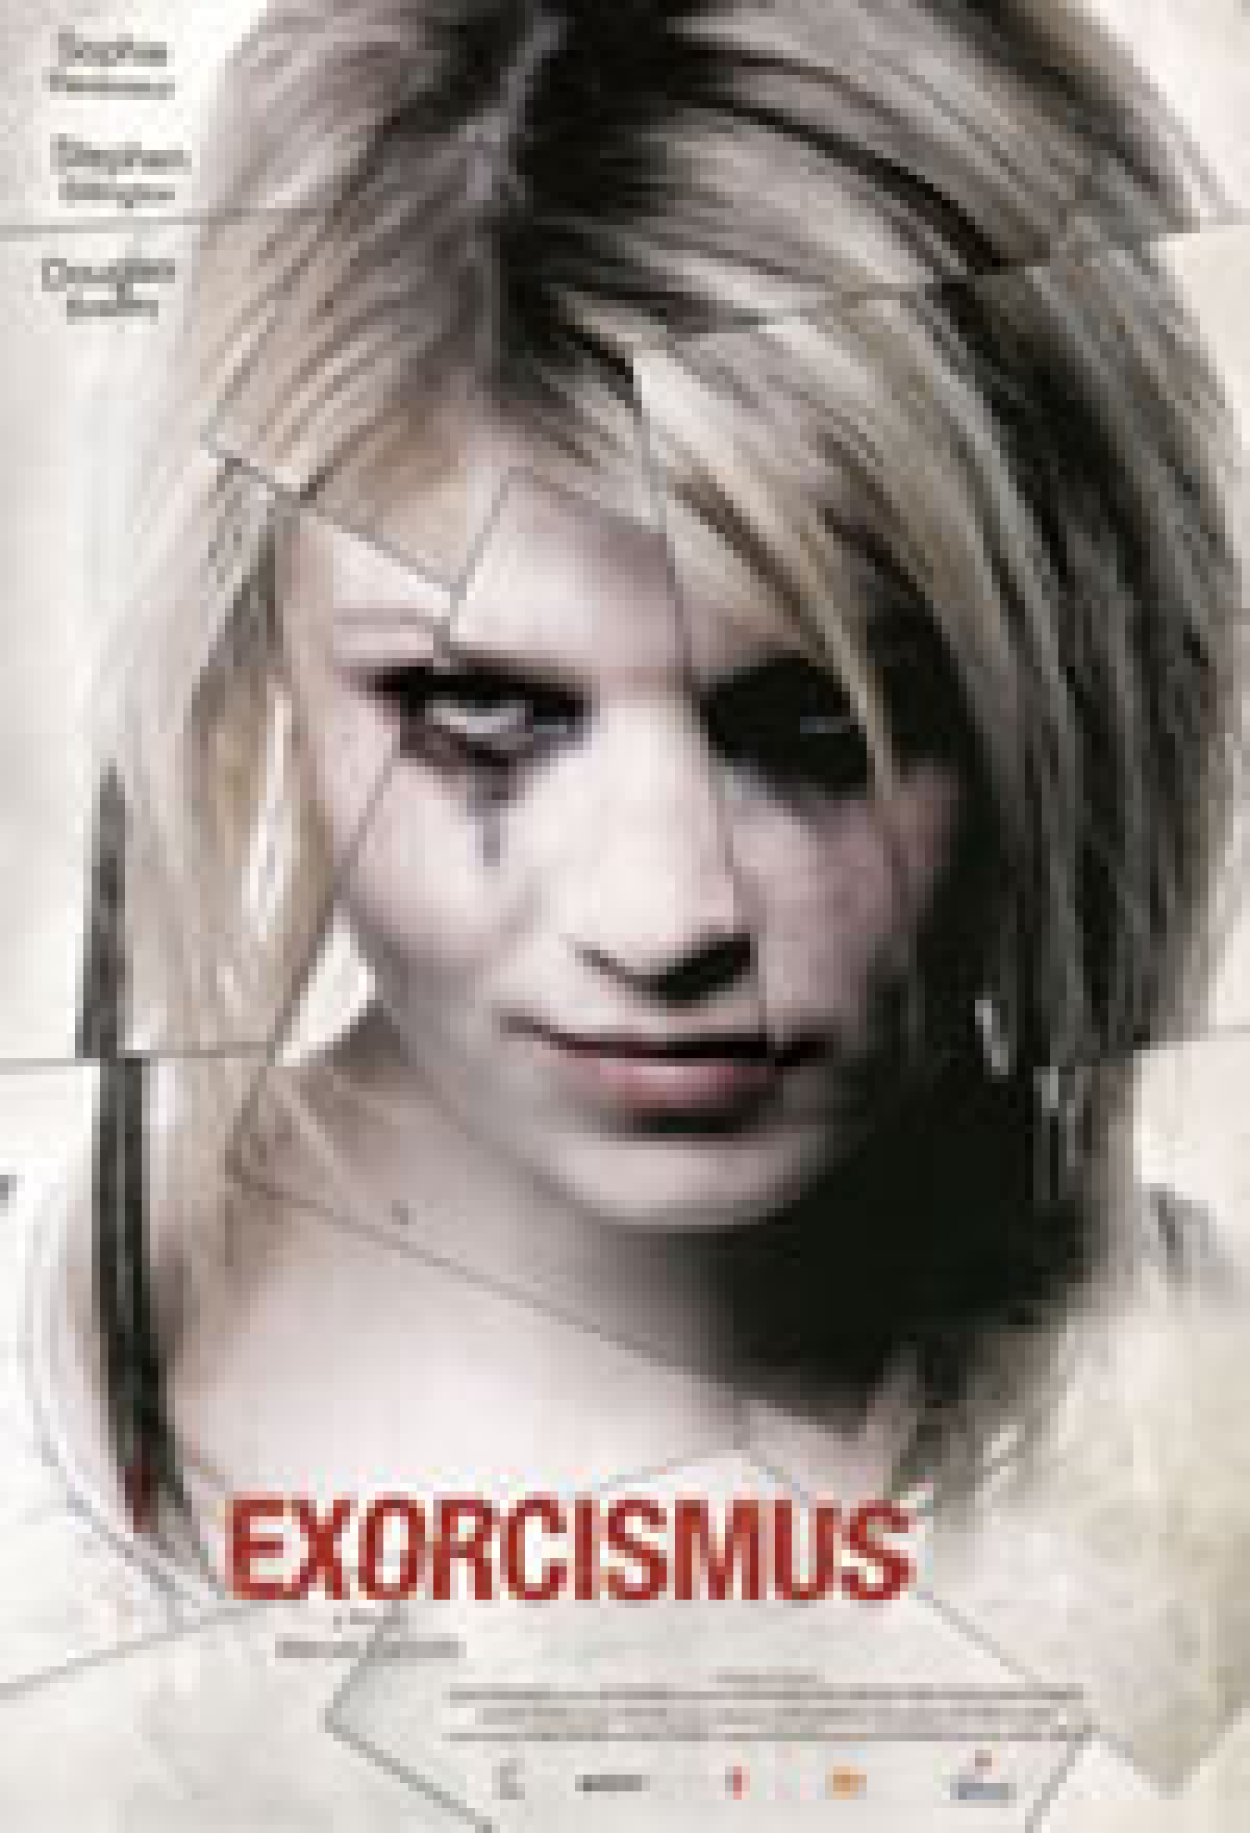 Exorcismus – A Possessão (Filme), Trailer, Sinopse e Curiosidades